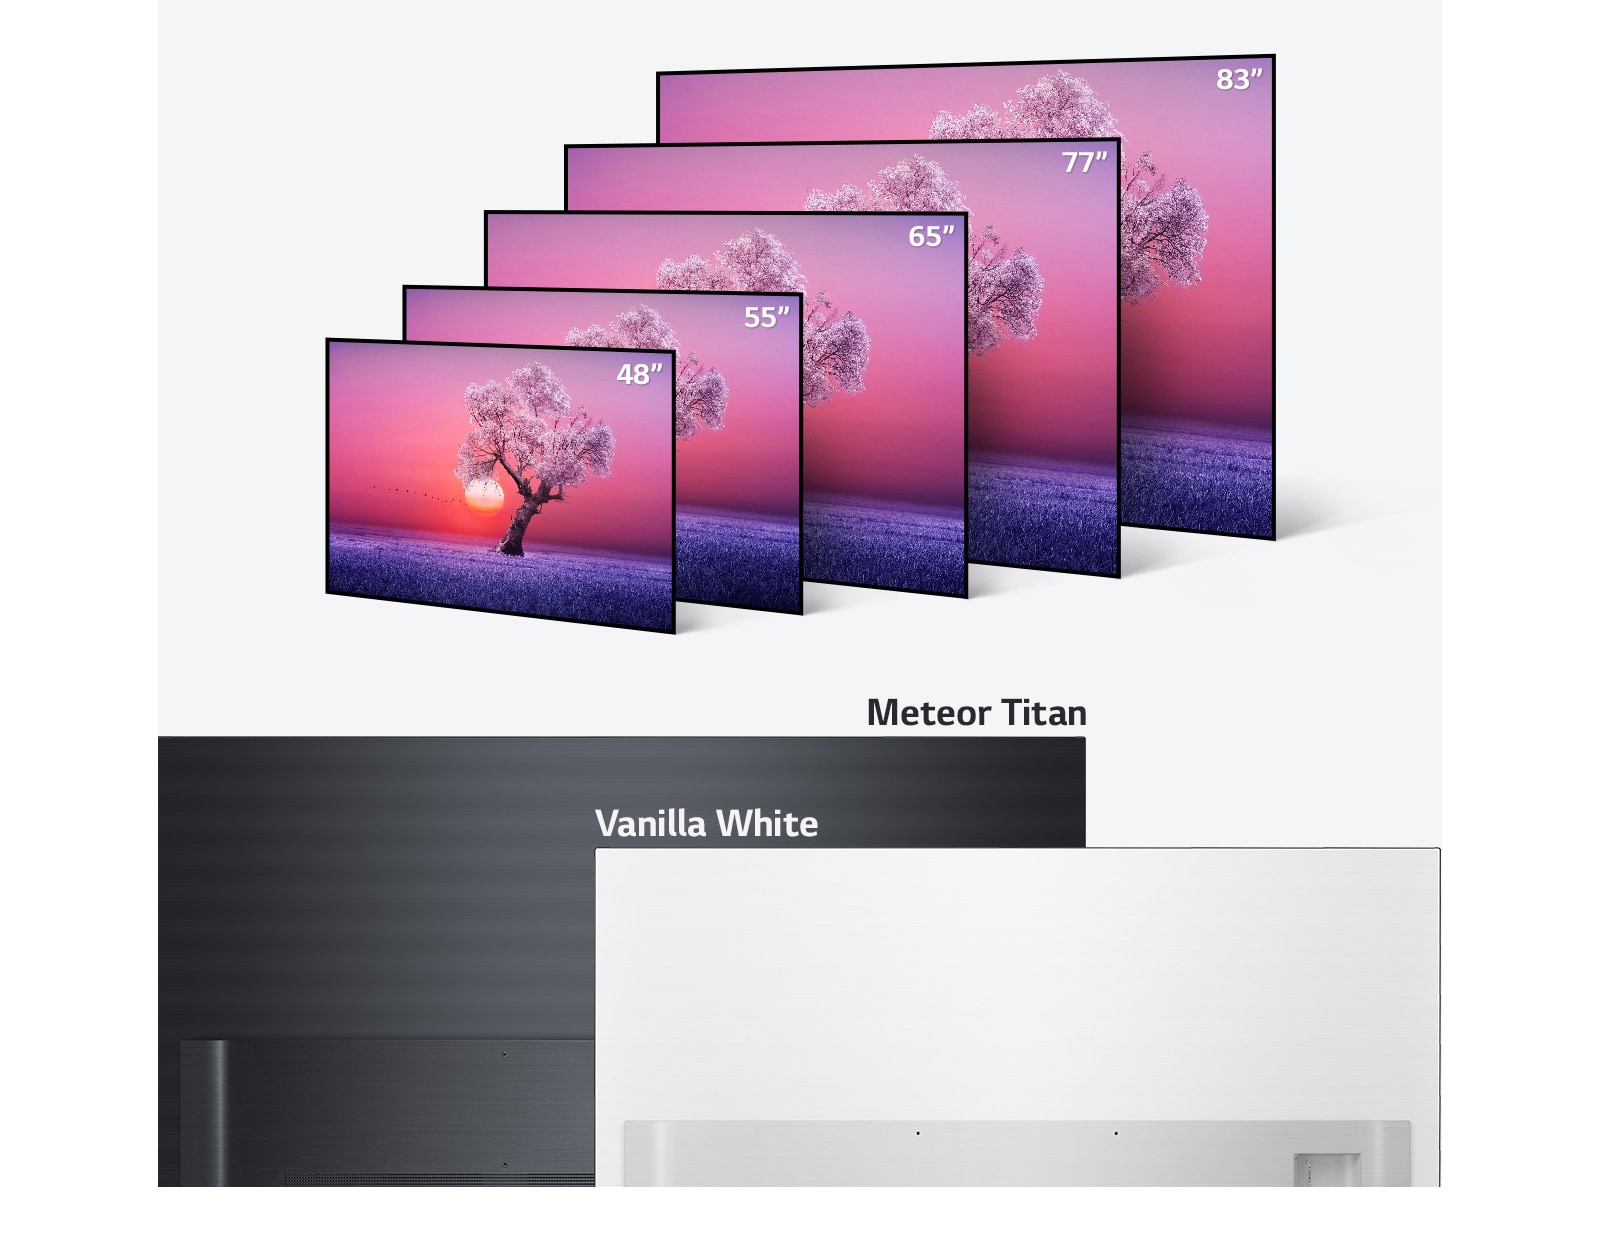 Gamma di prodotti TV LG OLED in varie dimensioni da 48 pollici a 83 pollici e nei colori nero chiaro e bianco vaniglia